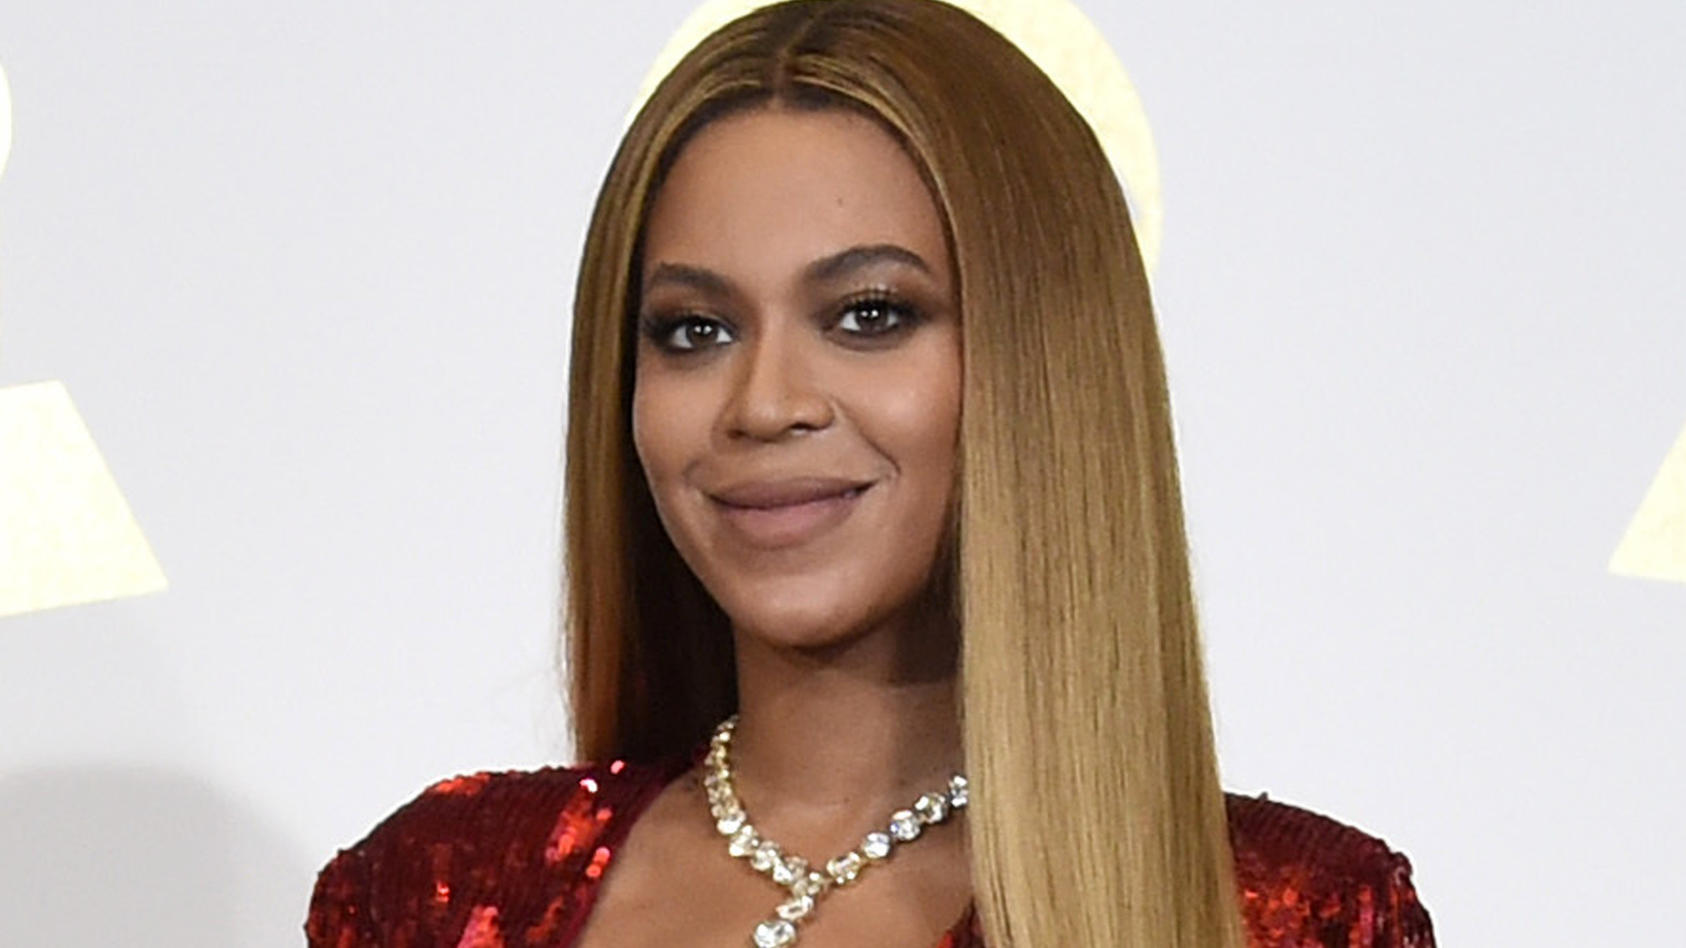 ARCHIV - 12.02.2017, USA, Los Angeles: Sängerin Beyonce bei der 59. Grammy-Verleihung. Beyonce hat Details über die schwierige Geburt ihrer Zwillinge vor gut einem Jahr öffentlich gemacht. (zu dpa "Beyonce: Zwillinge kamen mit Not-Kaiserschnitt zur W